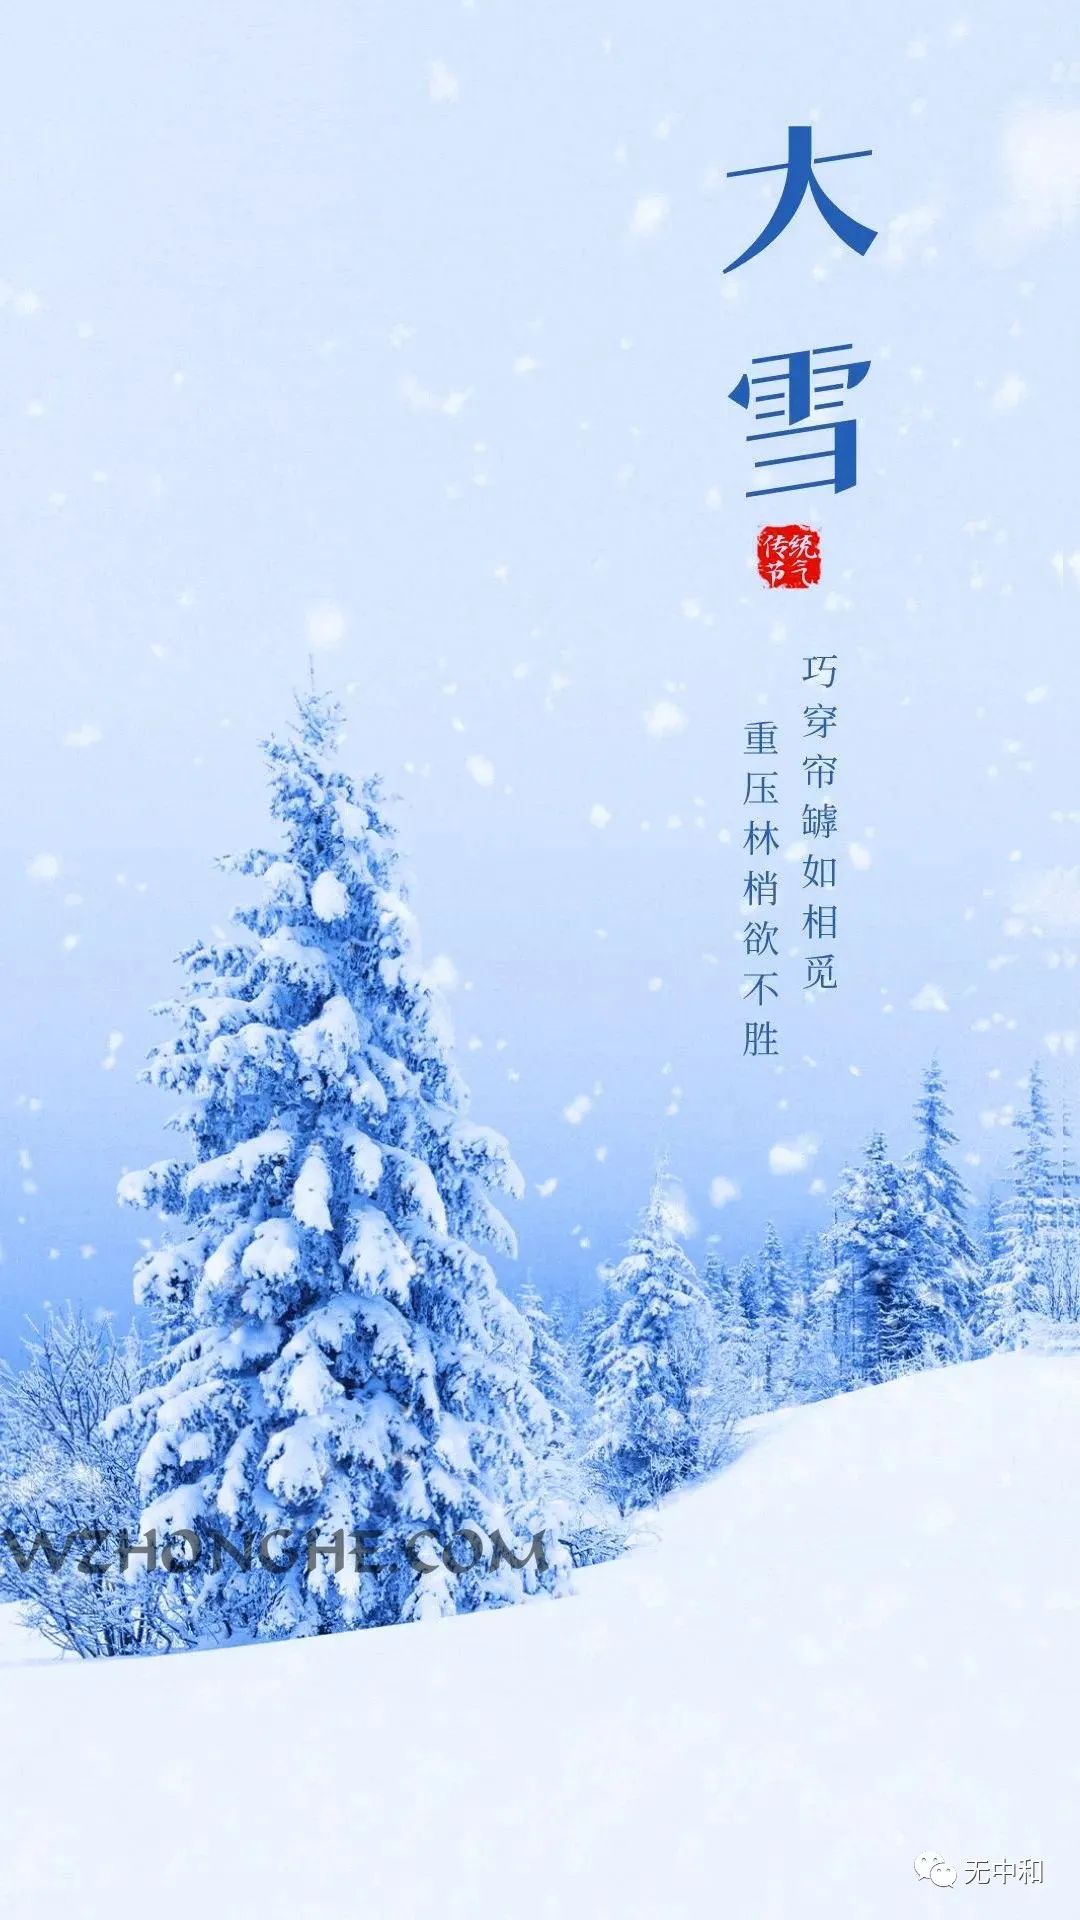 2022年12月7日 星期三 农历十一月十四 大雪 -无中和wzhonghe.com